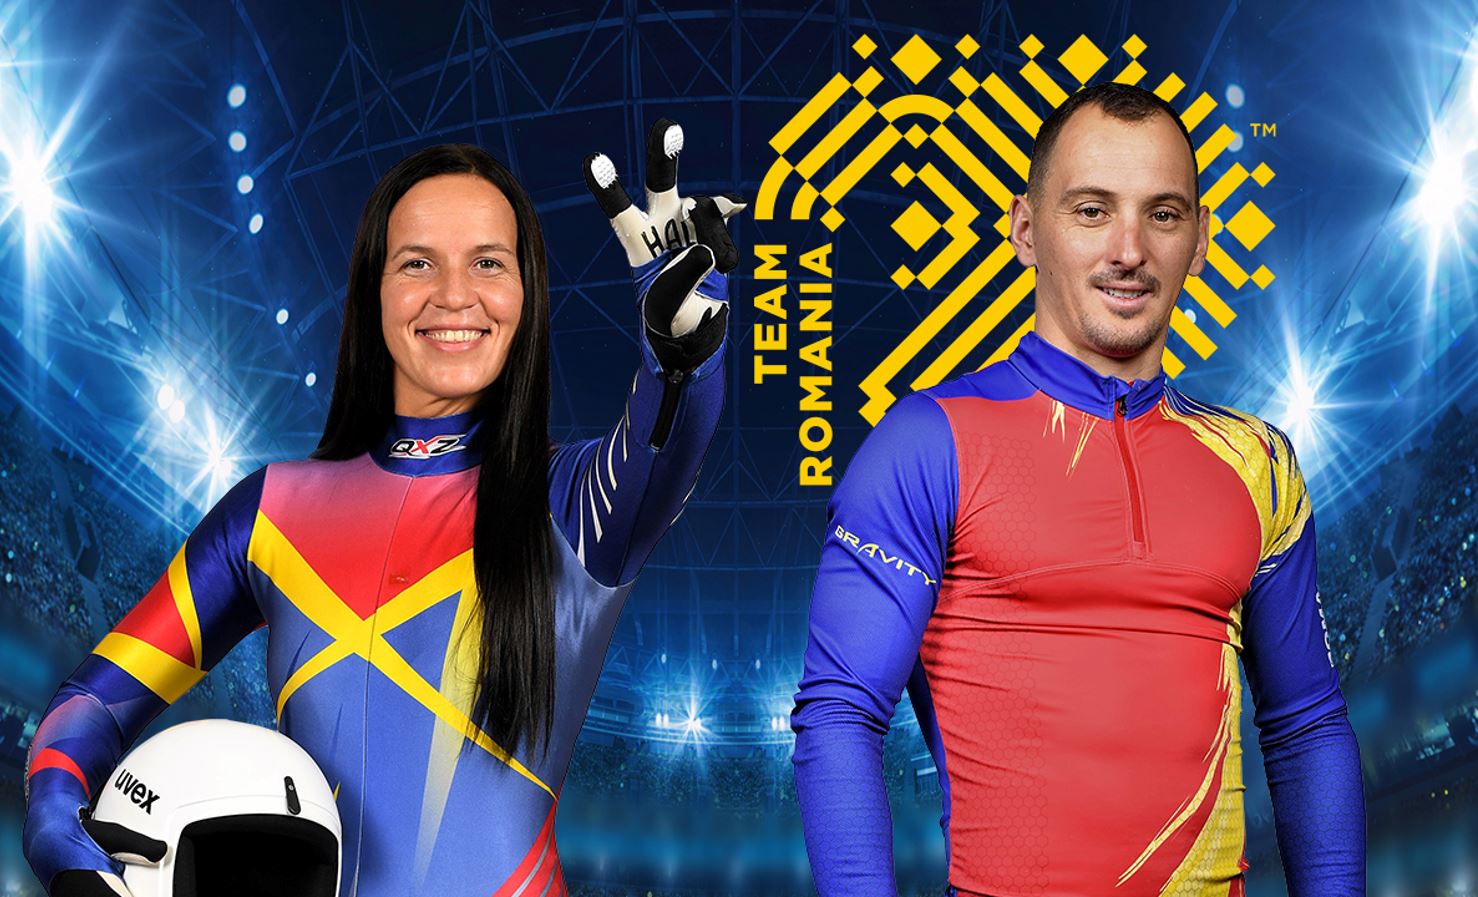 Η ομάδα της Ρουμανίας για τους Ολυμπιακούς Αγώνες του Πεκίνου!  Ο πολυτιμότερος σκιέρ της Ρουμανίας μένει εκτός.  Η αντίδραση του Υπουργού